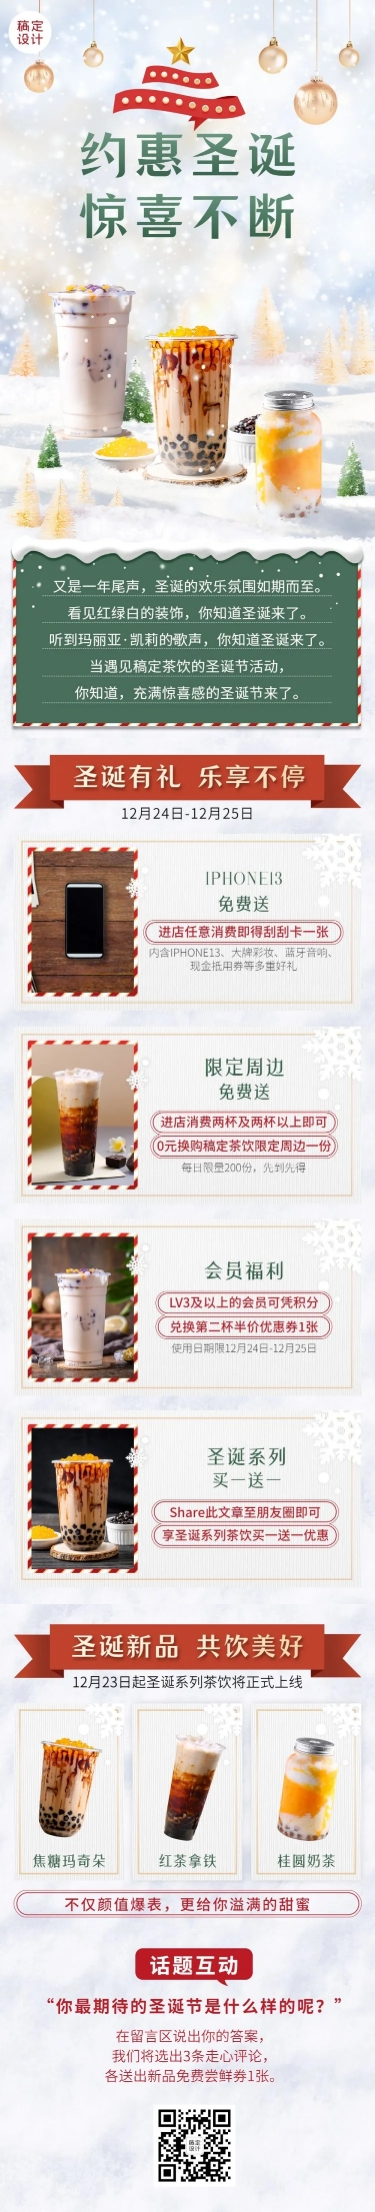 圣诞节奶茶饮品营销简约文章长图